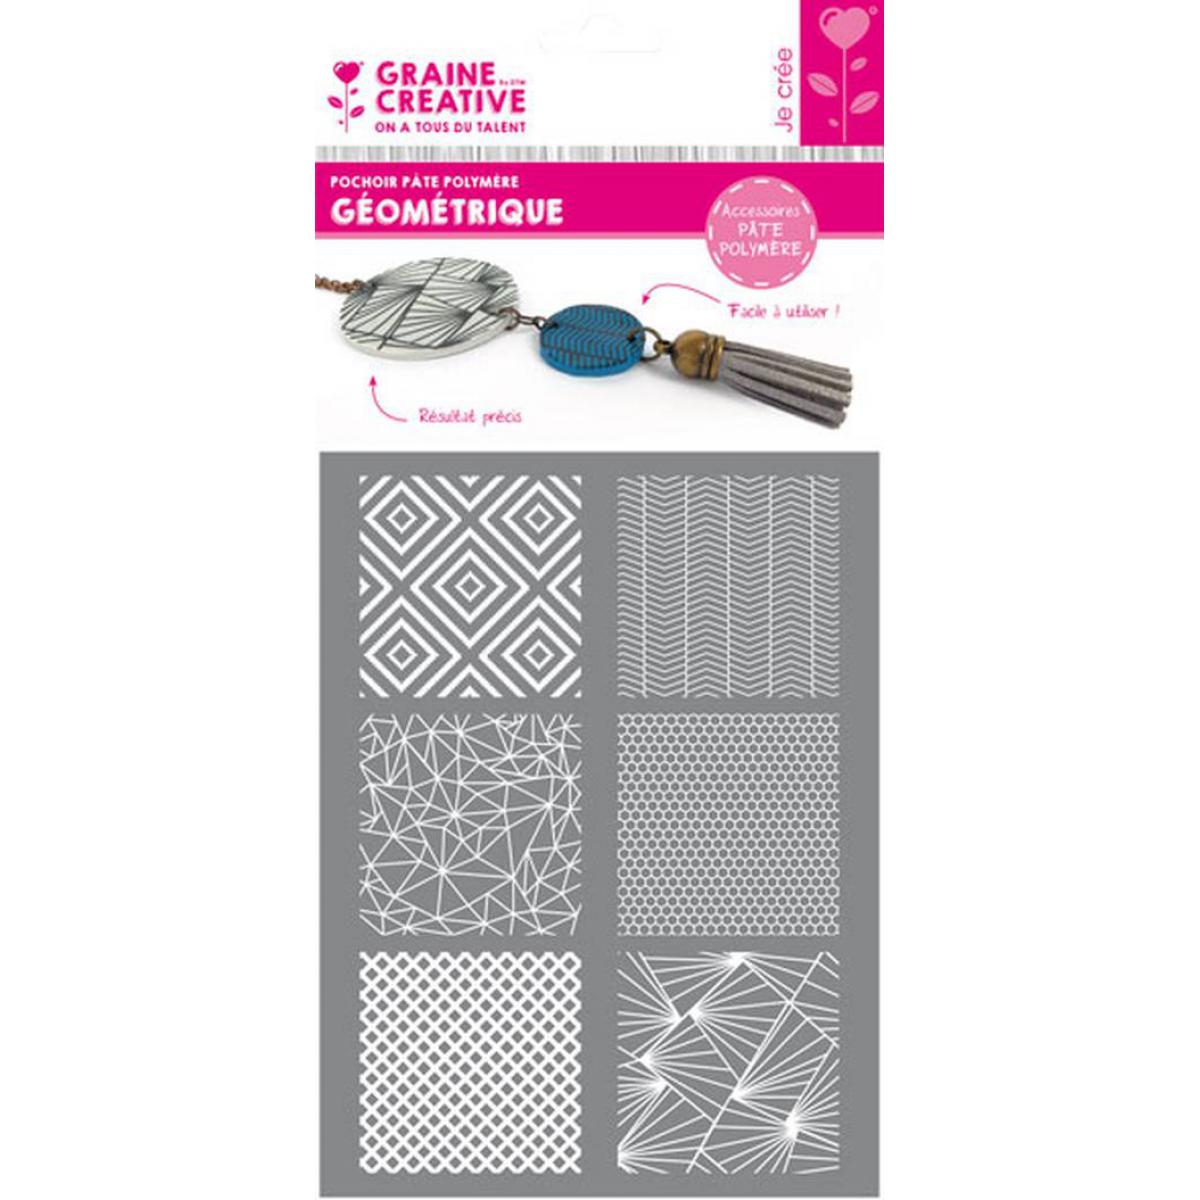 Dtm Loisirs Creatifs - Pochoir silkscreen pour pâte polymère Géométrique - Graine créative - Modelage